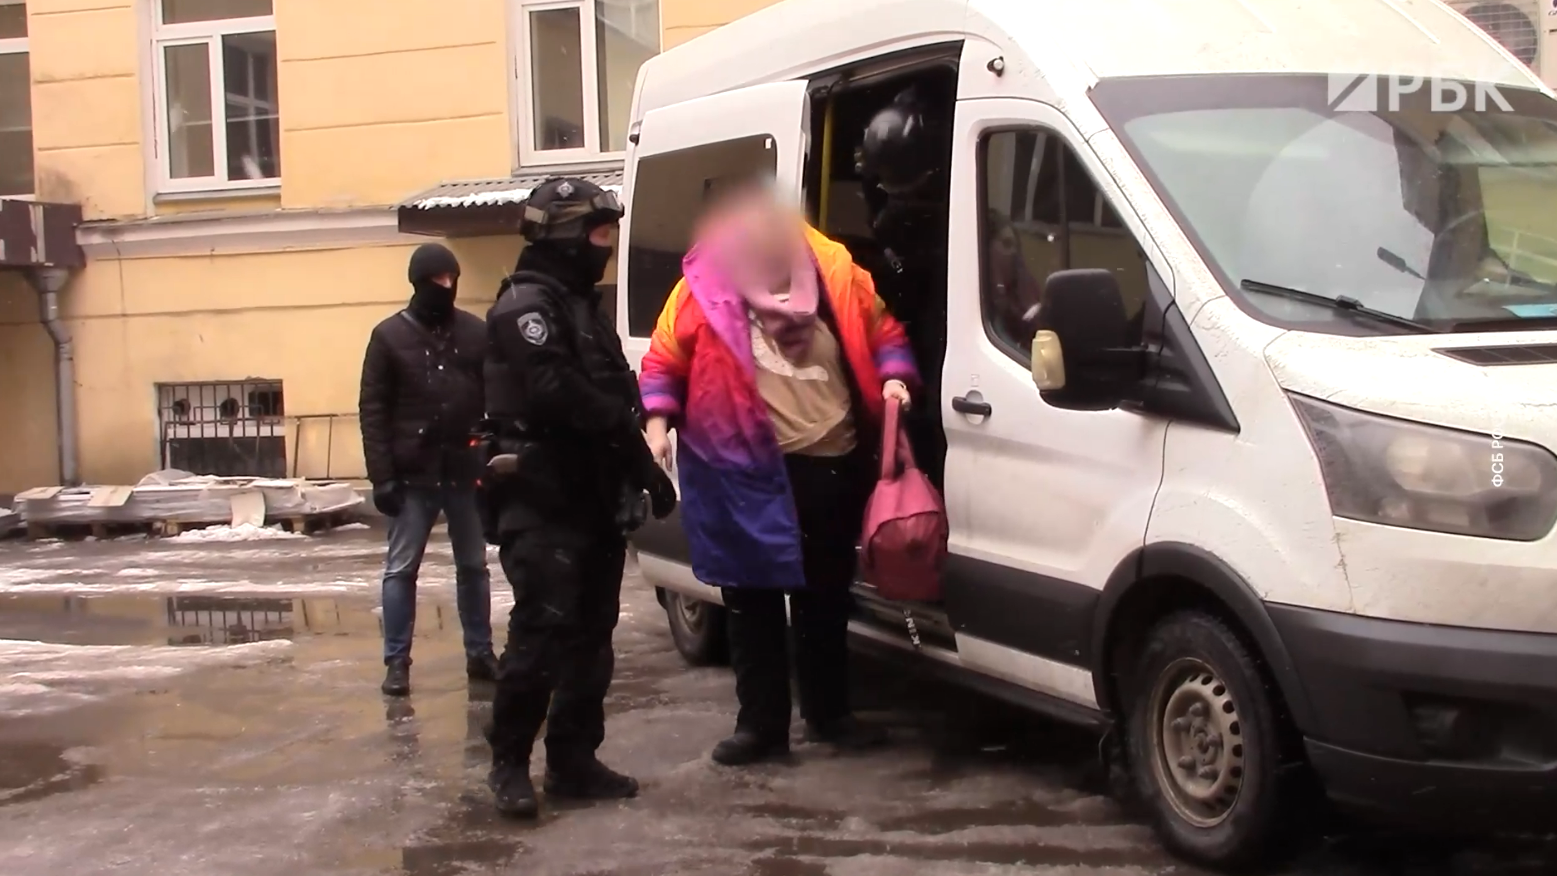 Москвичку арестовали по делу о госизмене за финансовую помощь ВСУ